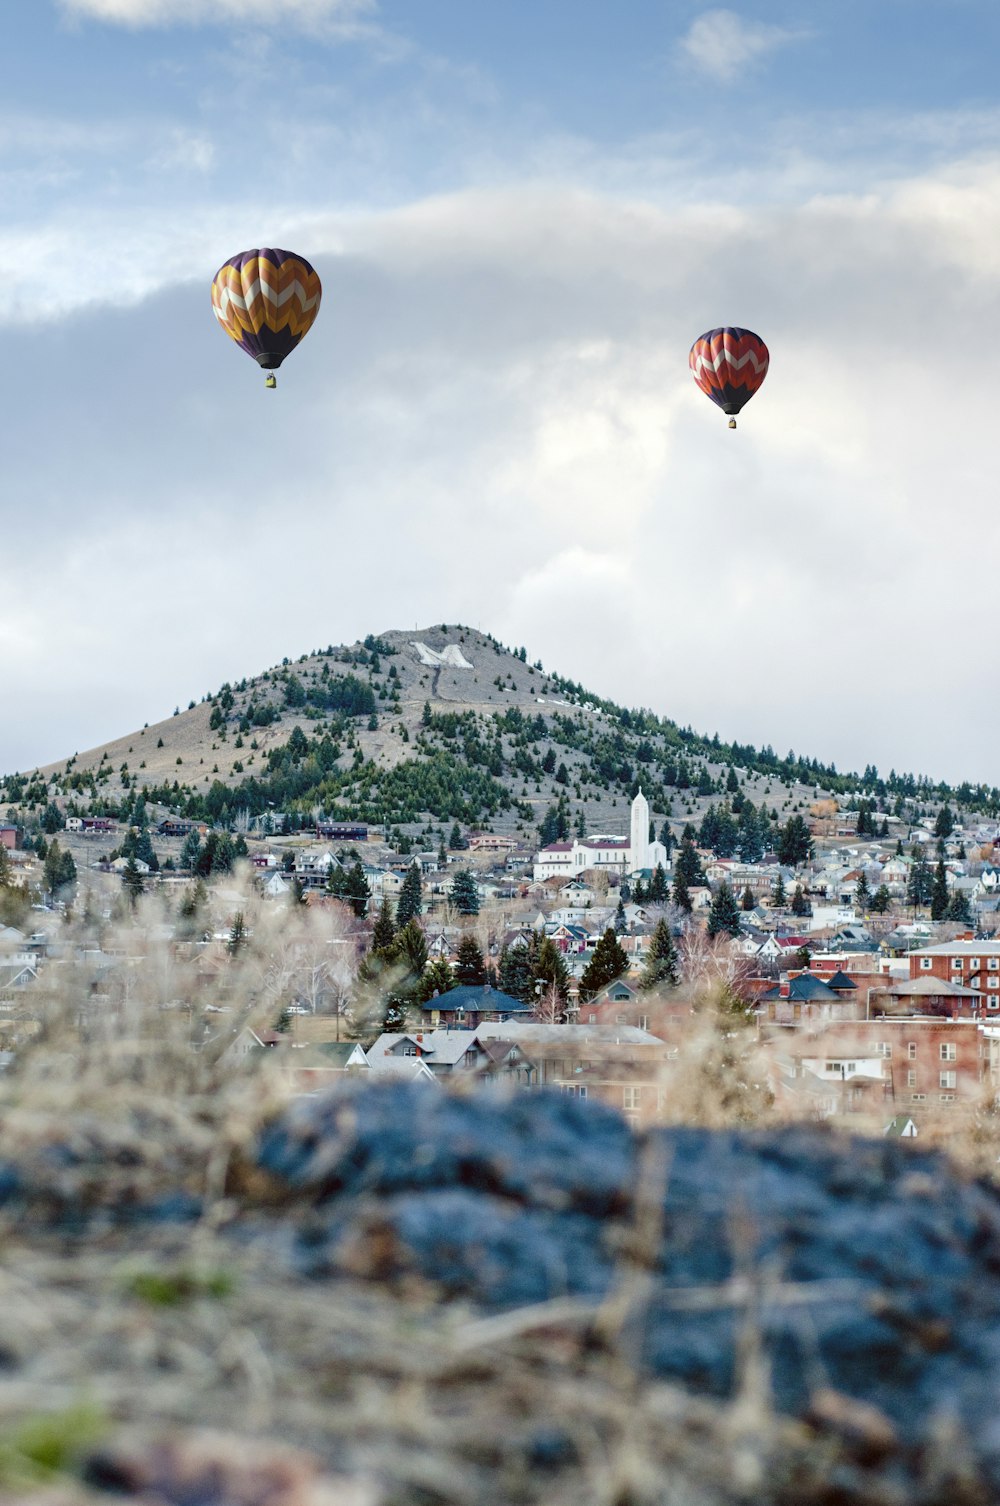 Dos globos aerostáticos de colores variados en el aire cerca de la montaña durante el día